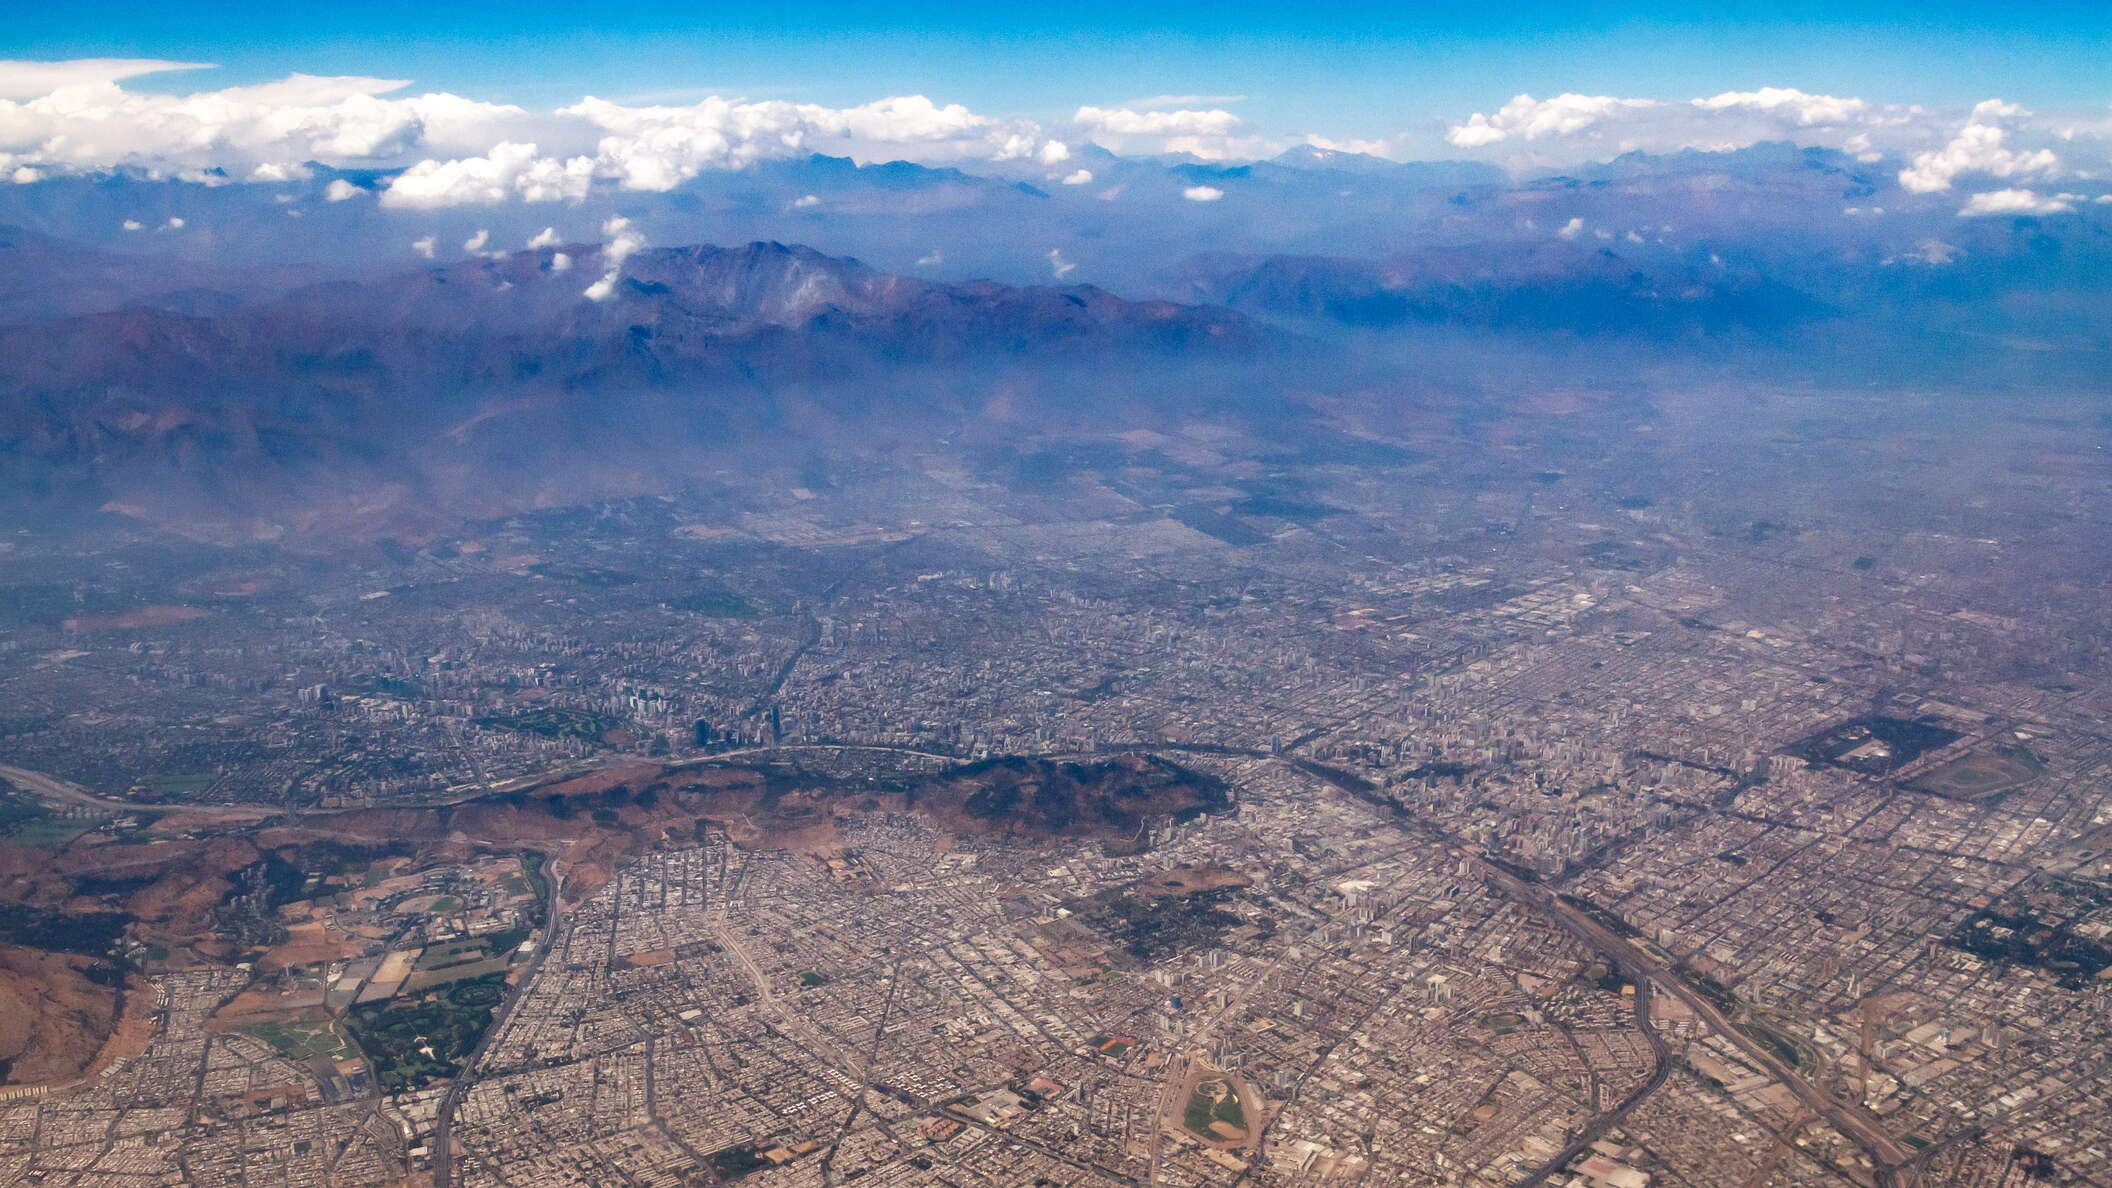 Santigo de Chile from the air